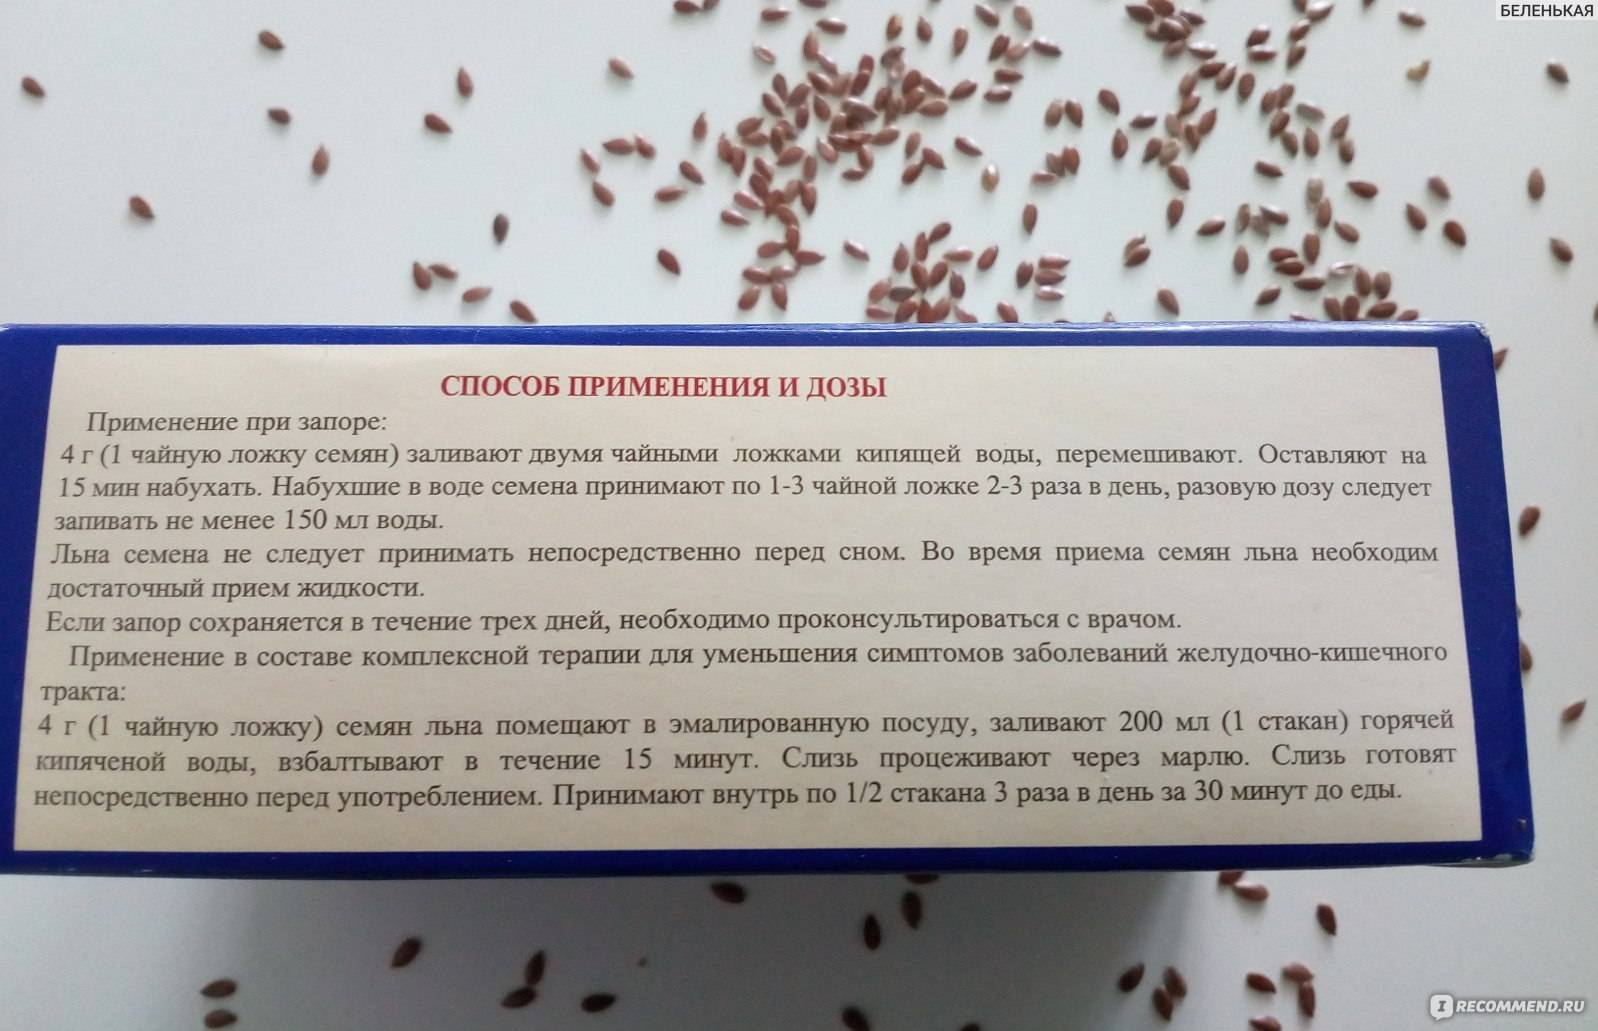 Семена льна, какая от них может быть польза и вред, как правильно их принимать | arpuz.ru